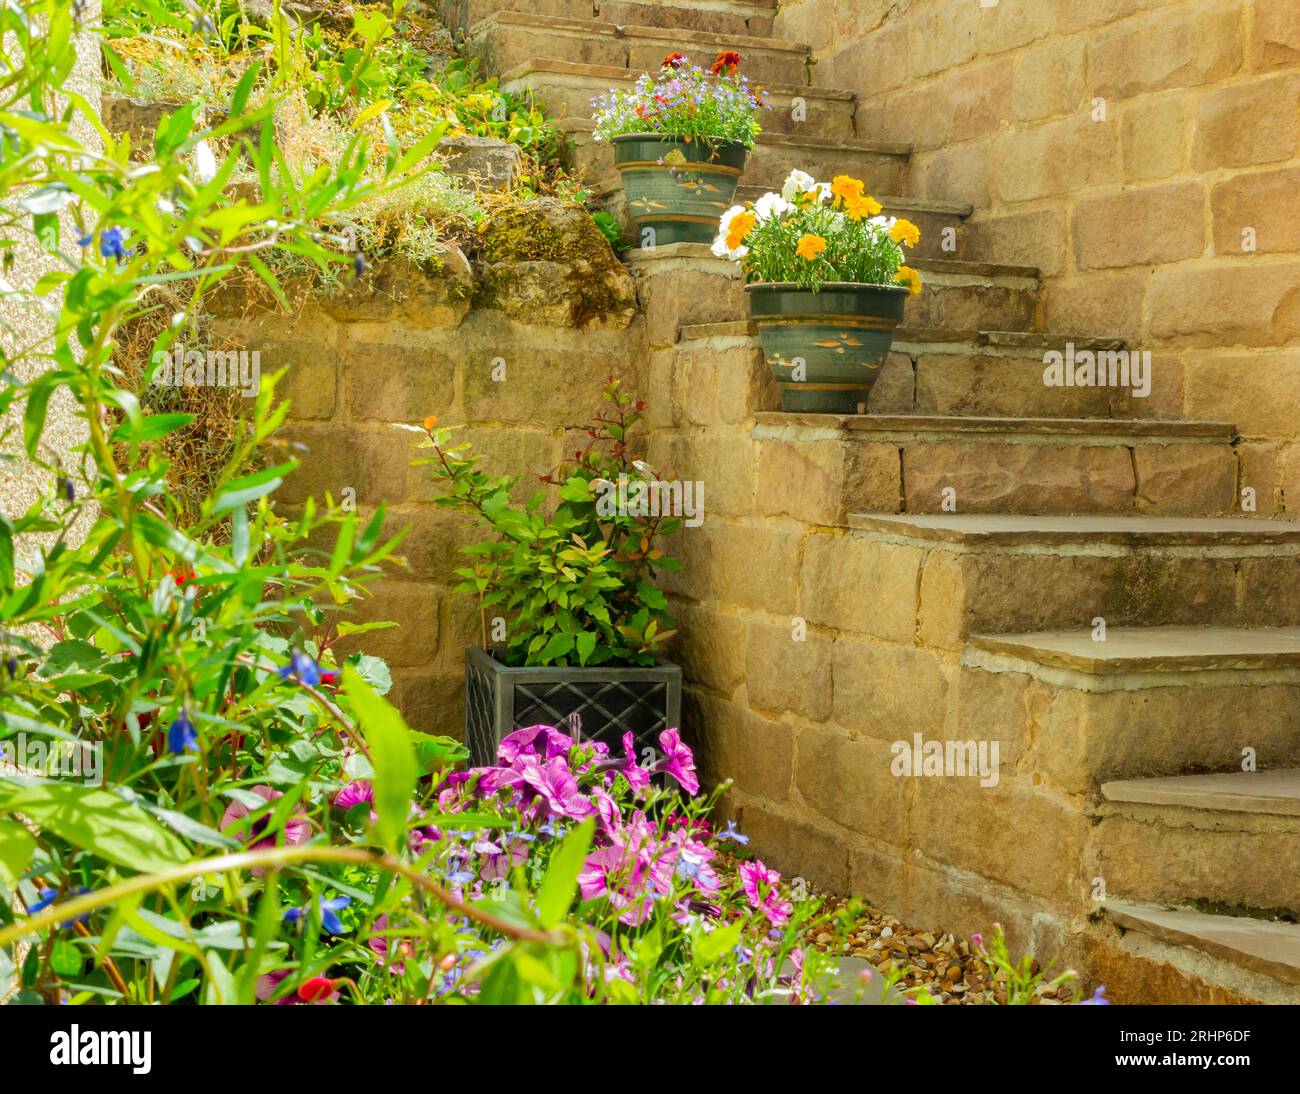 Pflanzgefäße und Töpfe in einem Terrassengarten im Sommer mit Topfpflanzen, einschließlich Lobelien, Ringelblumen und Petunien, mit Wänden und Stufen auf verschiedenen Ebenen Stockfoto